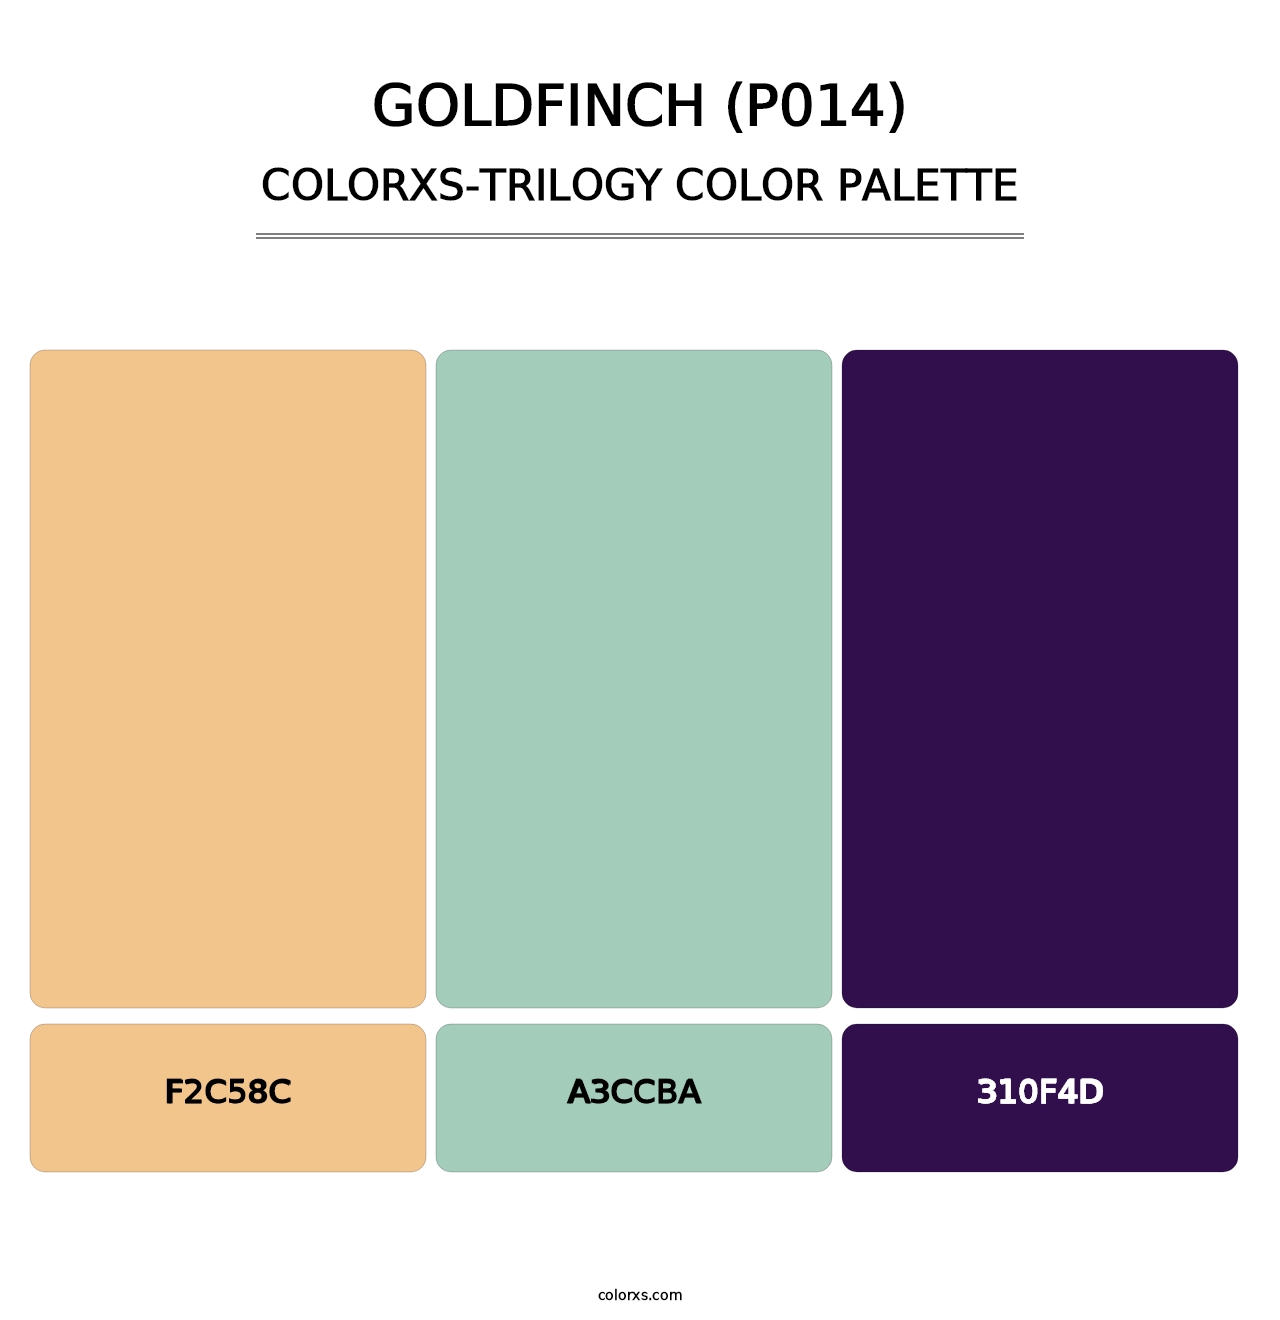 Goldfinch (P014) - Colorxs Trilogy Palette